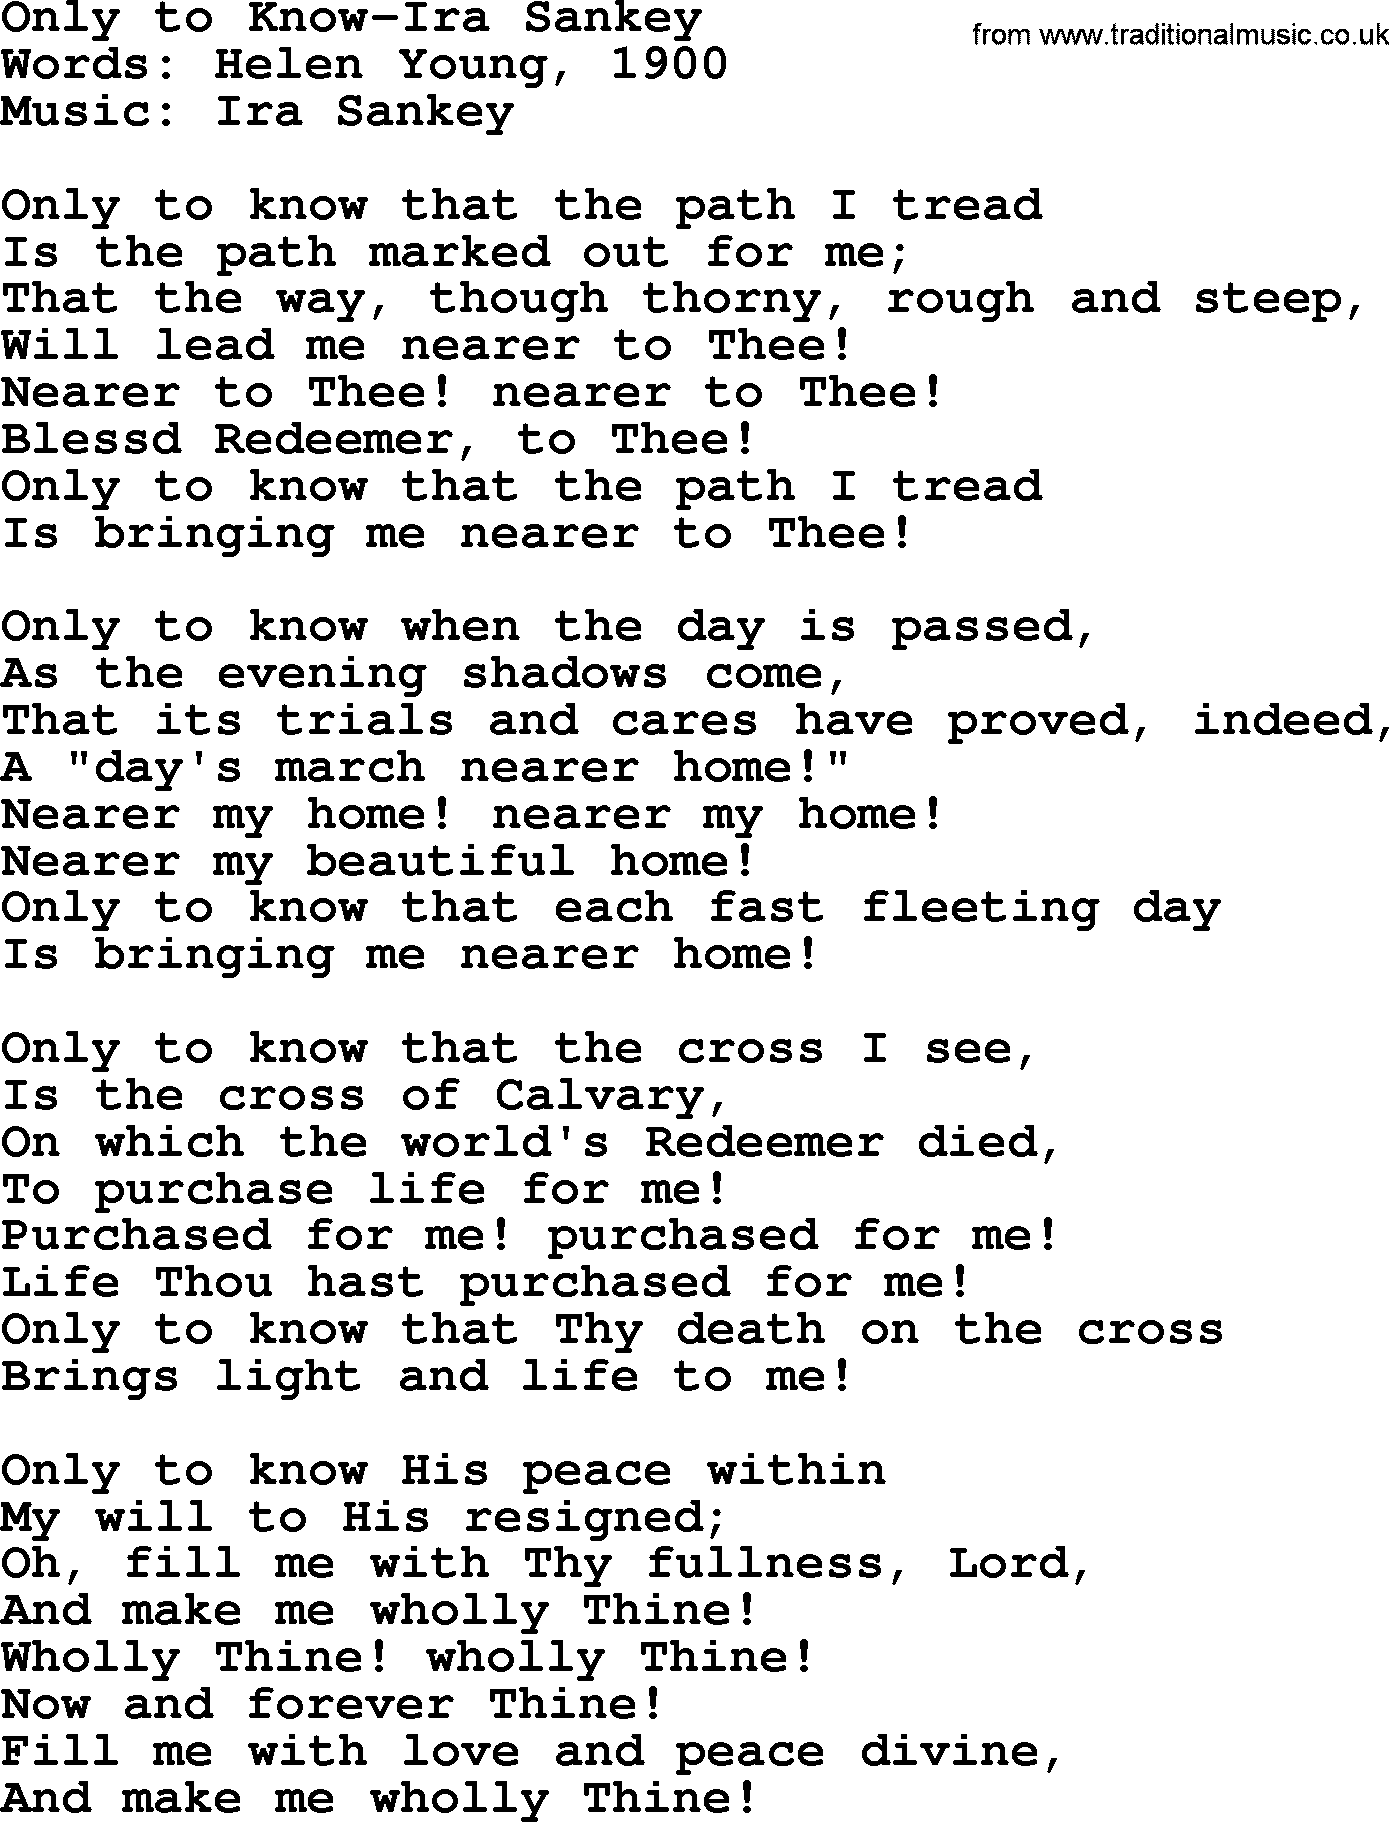 Ira Sankey hymn: Only to Know-Ira Sankey, lyrics